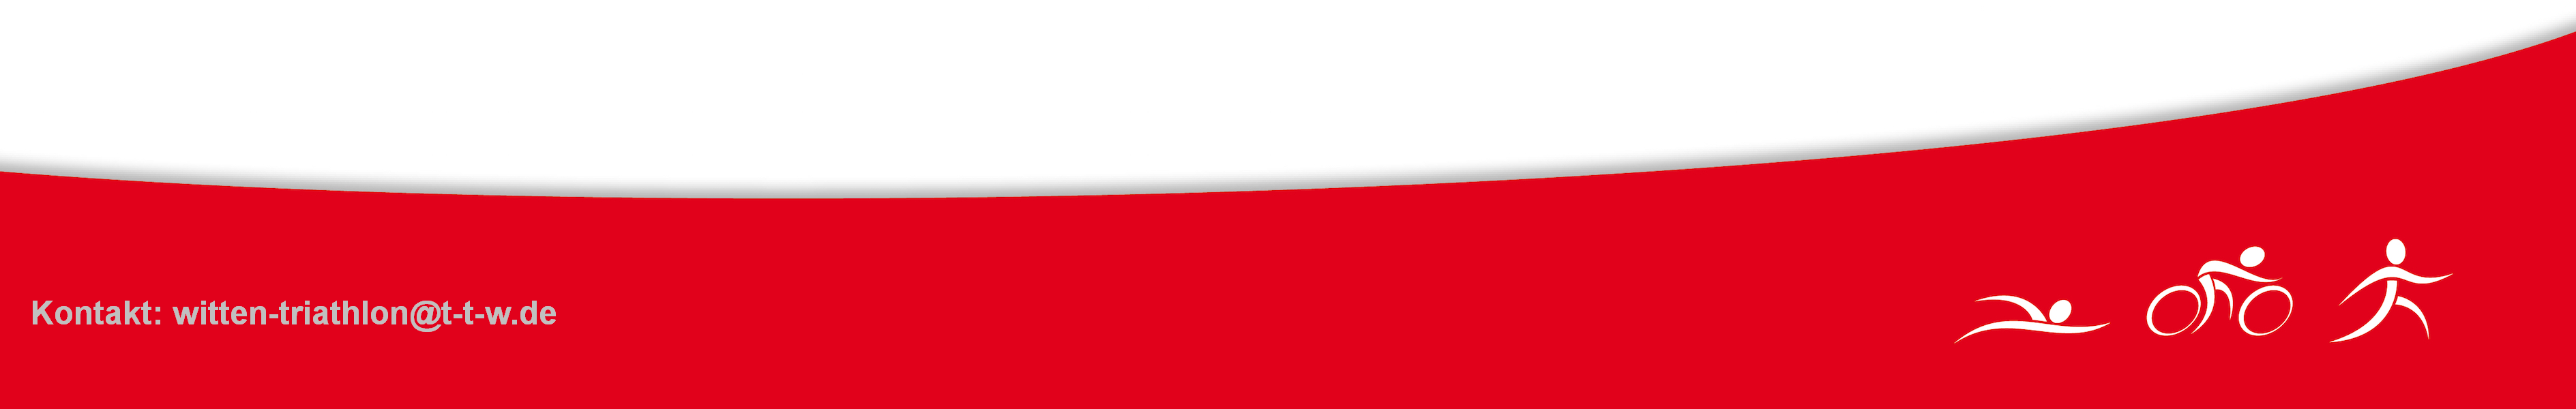 Roter Blaken mit Tri Logo